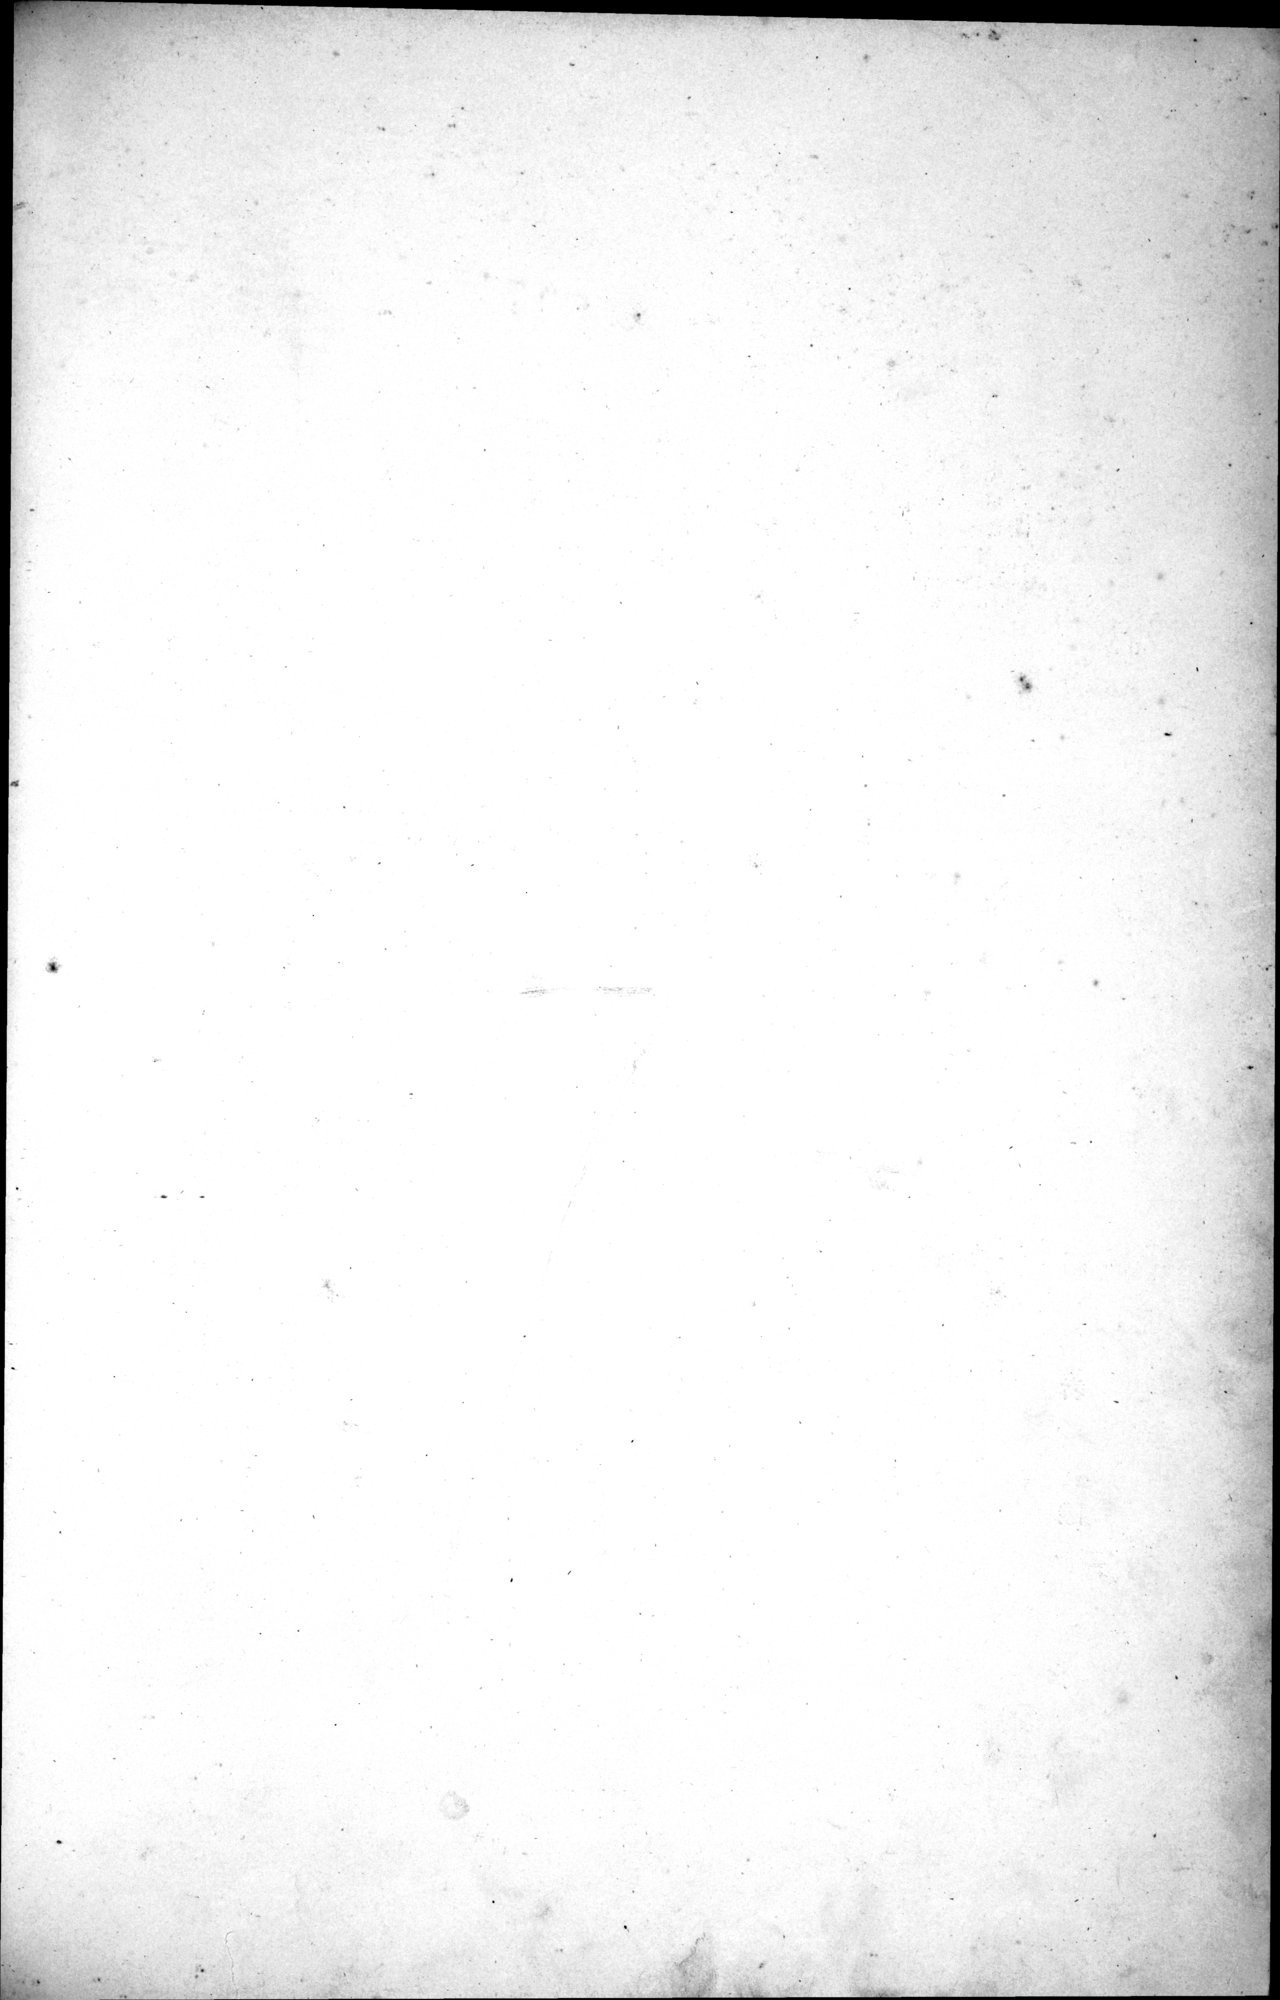 西域考古図譜 : vol.1 / Page 14 (Grayscale High Resolution Image)